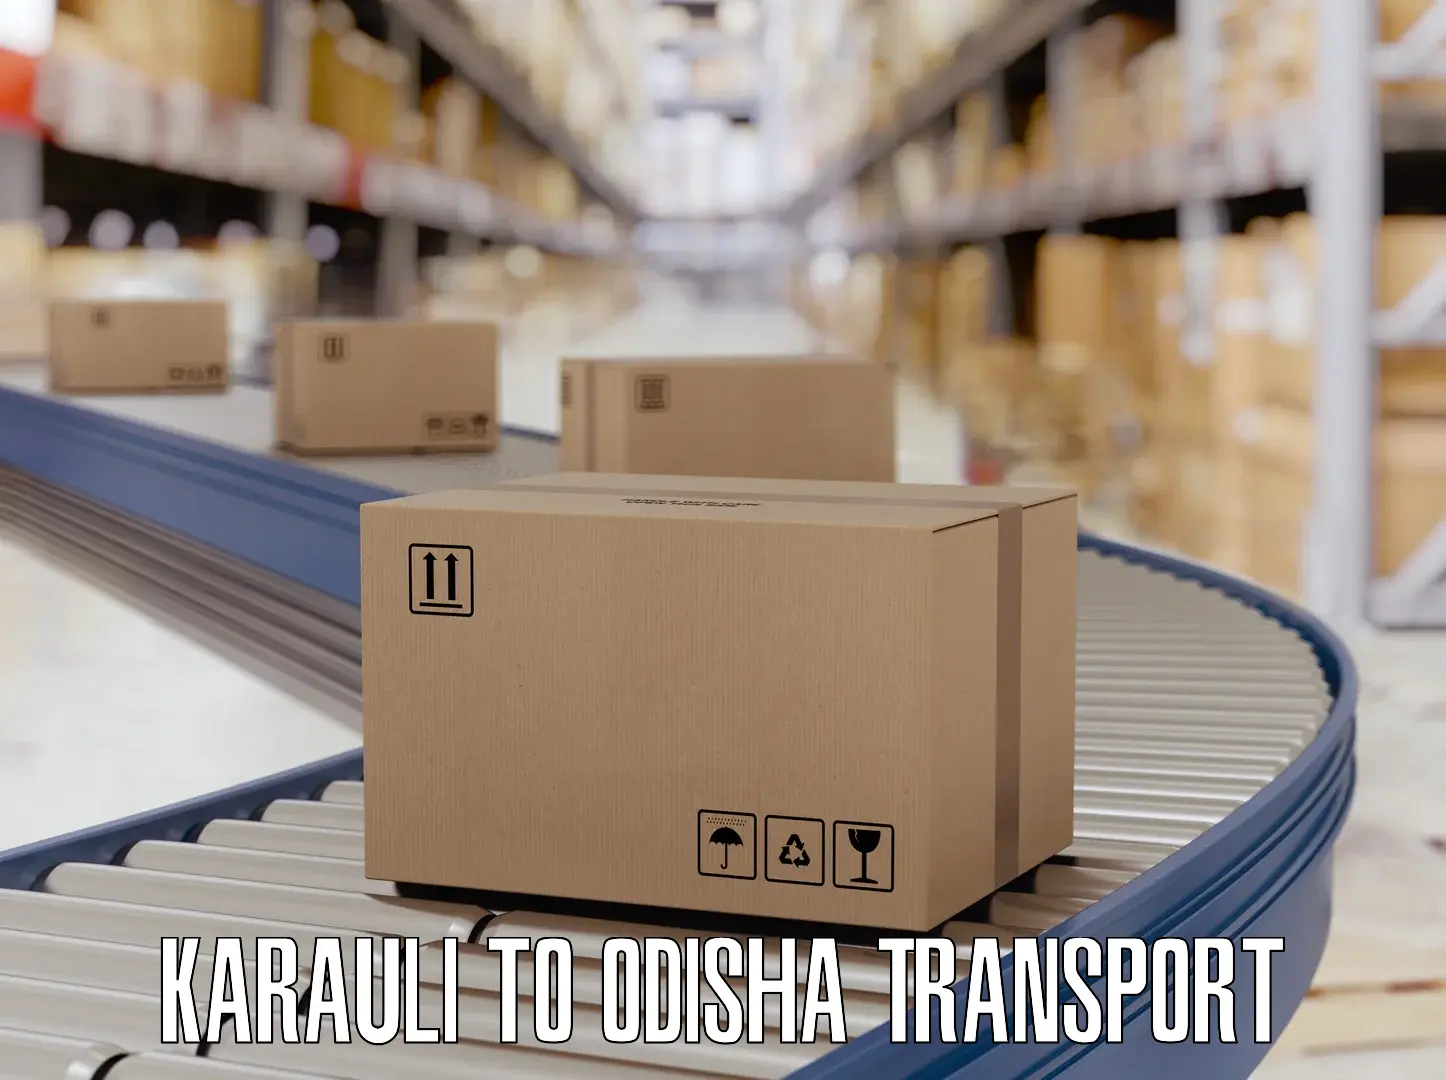 Cargo train transport services Karauli to Adaspur